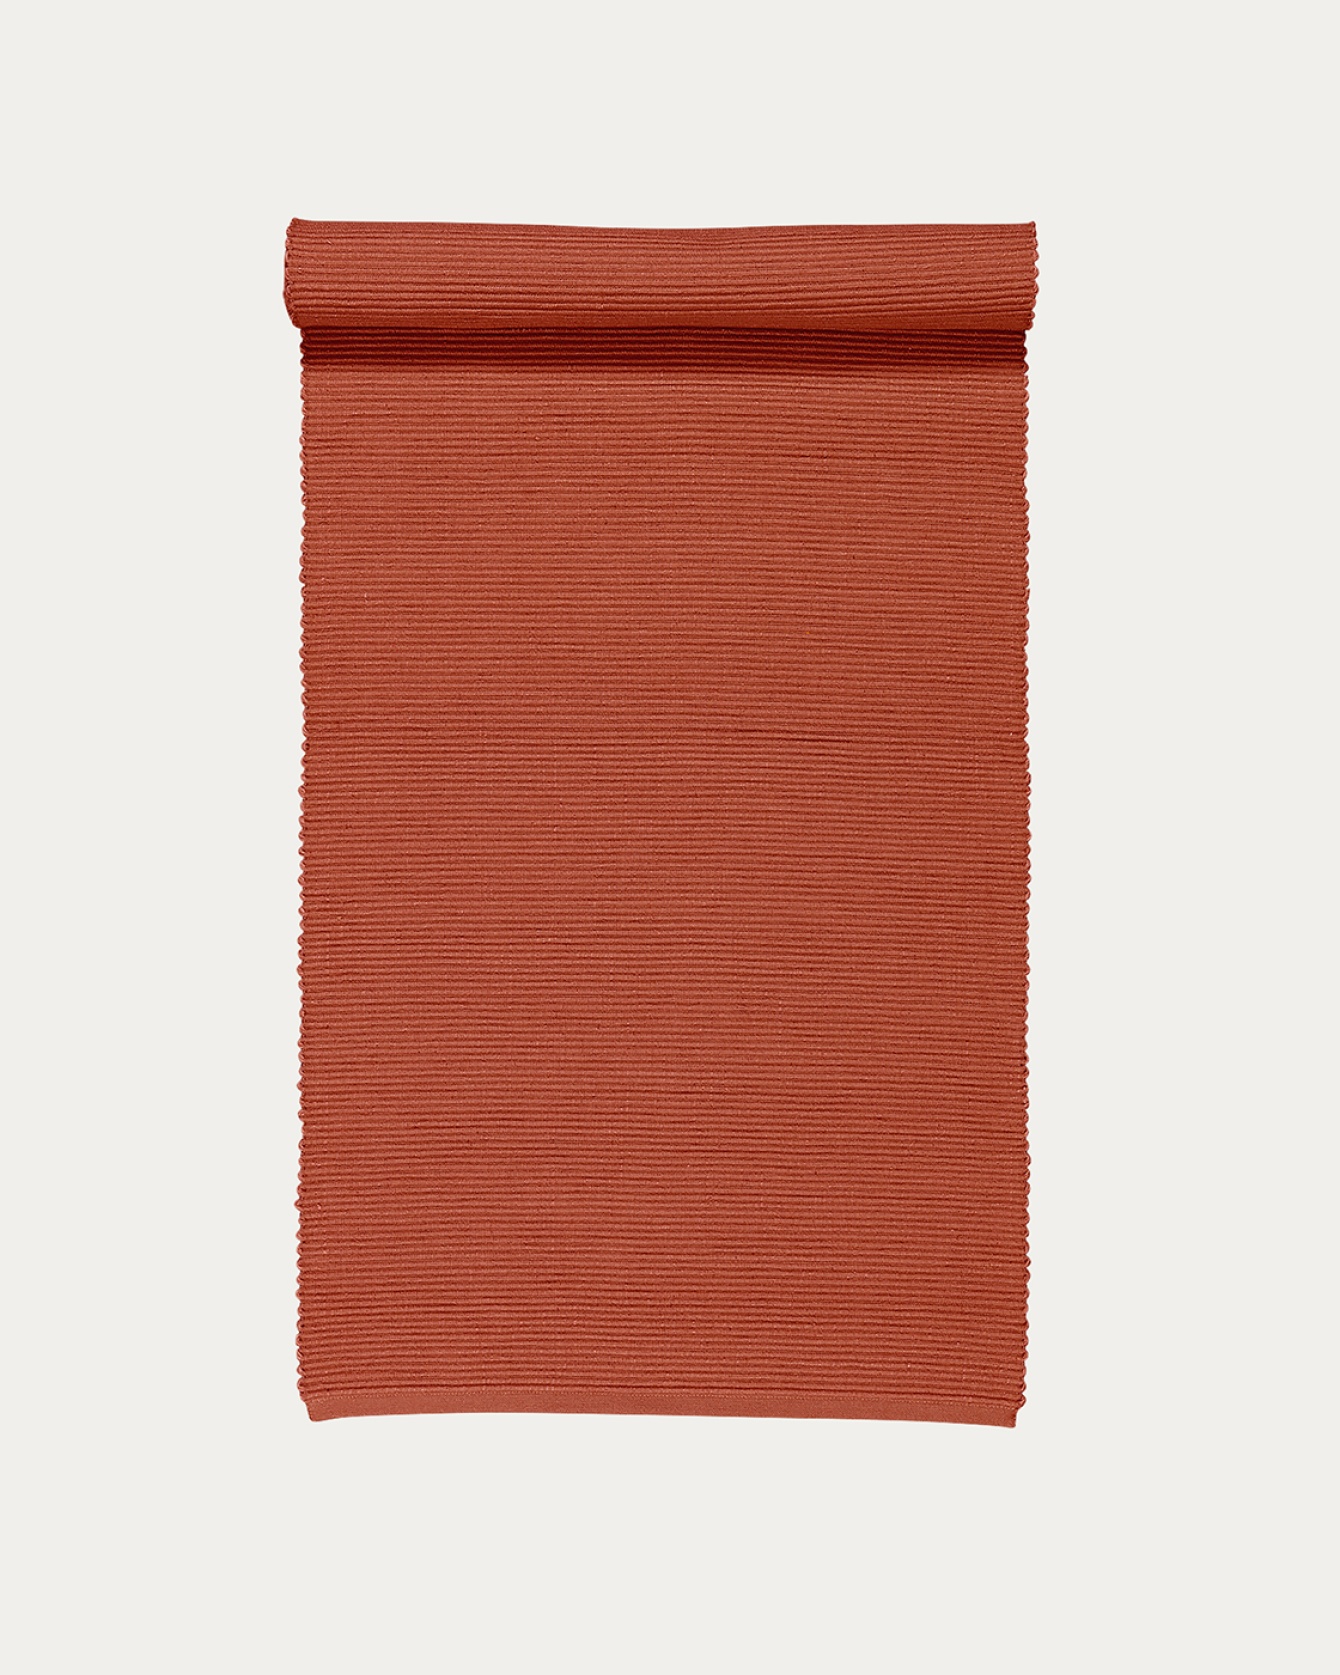 Image du produit chemin de table UNI orange rouillé en coton doux de qualité côtelée de LINUM DESIGN. Taille 45 x 150 cm.